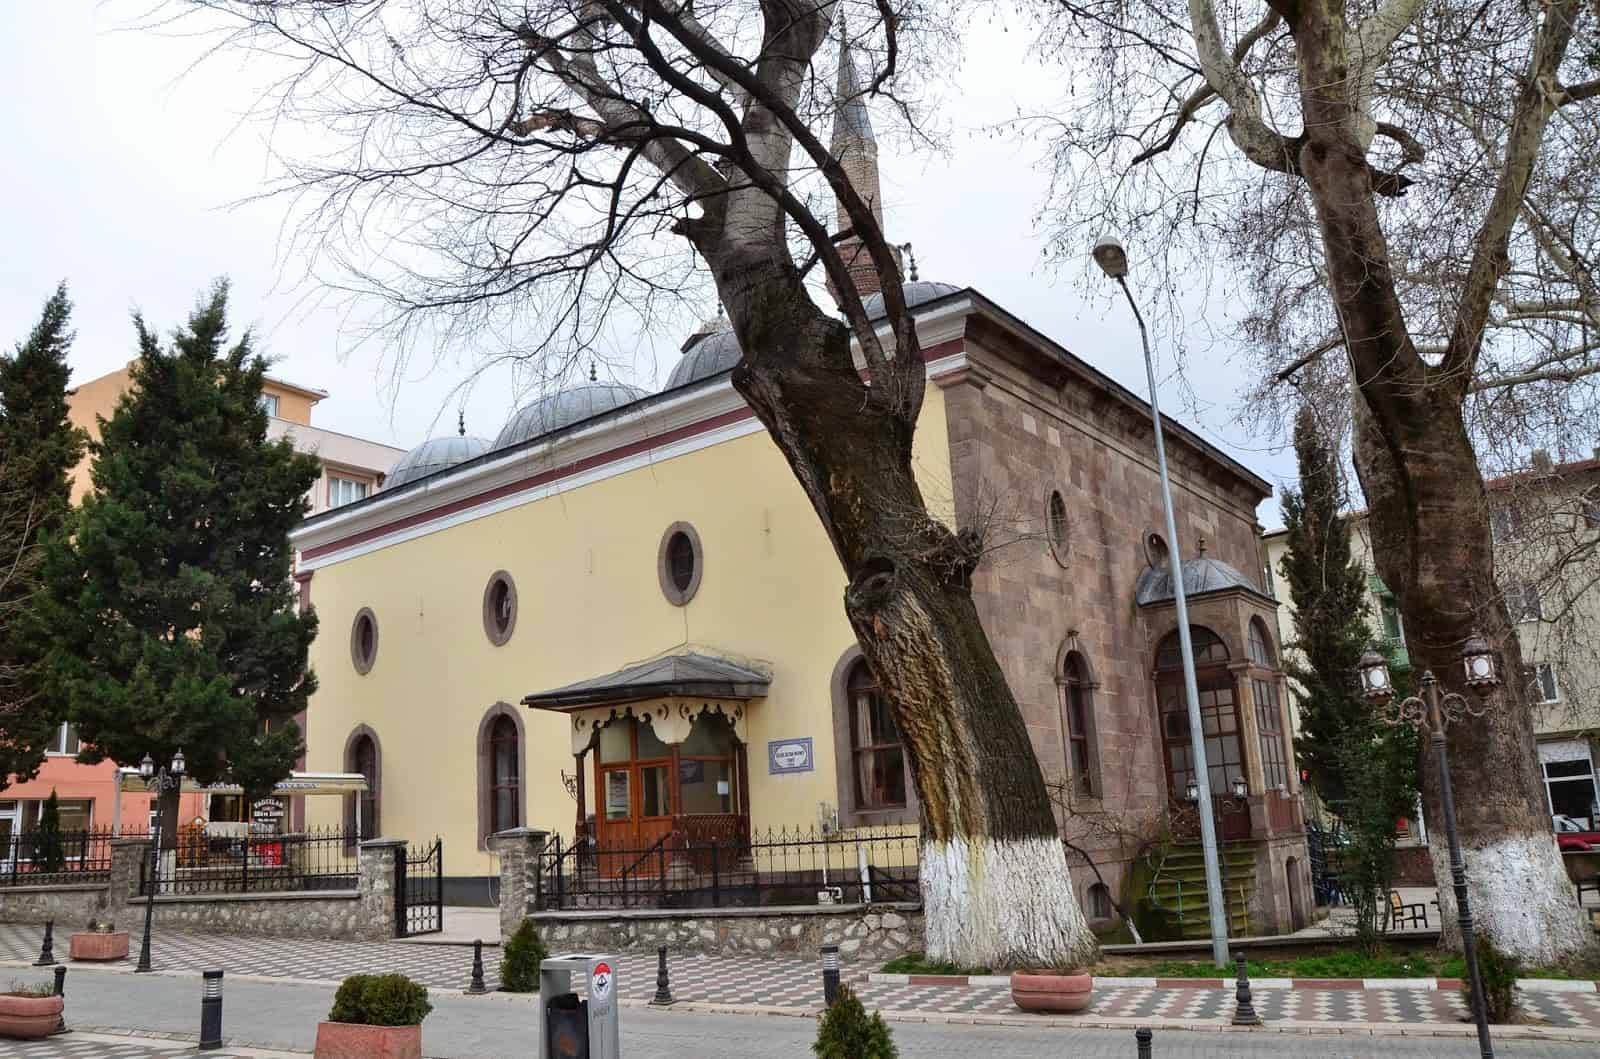 Çelebi Sultan Mehmet Camii in Söğüt, Turkey